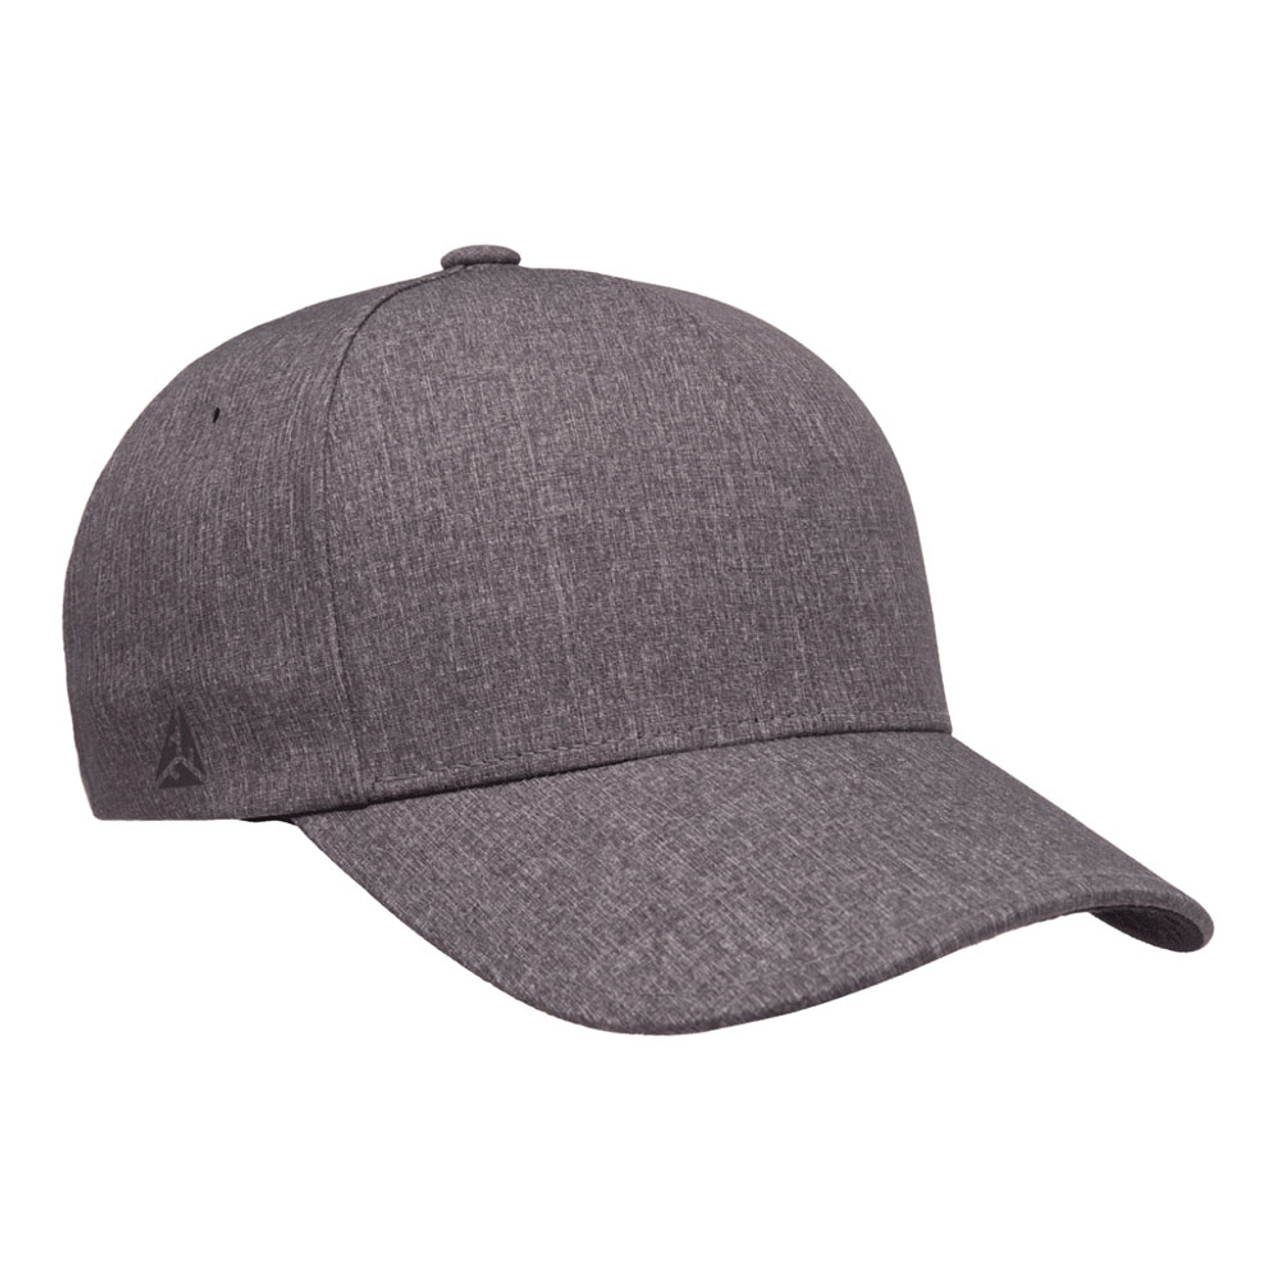 Flexfit Delta Carbon Cap - One Dozen | The Jac Hat